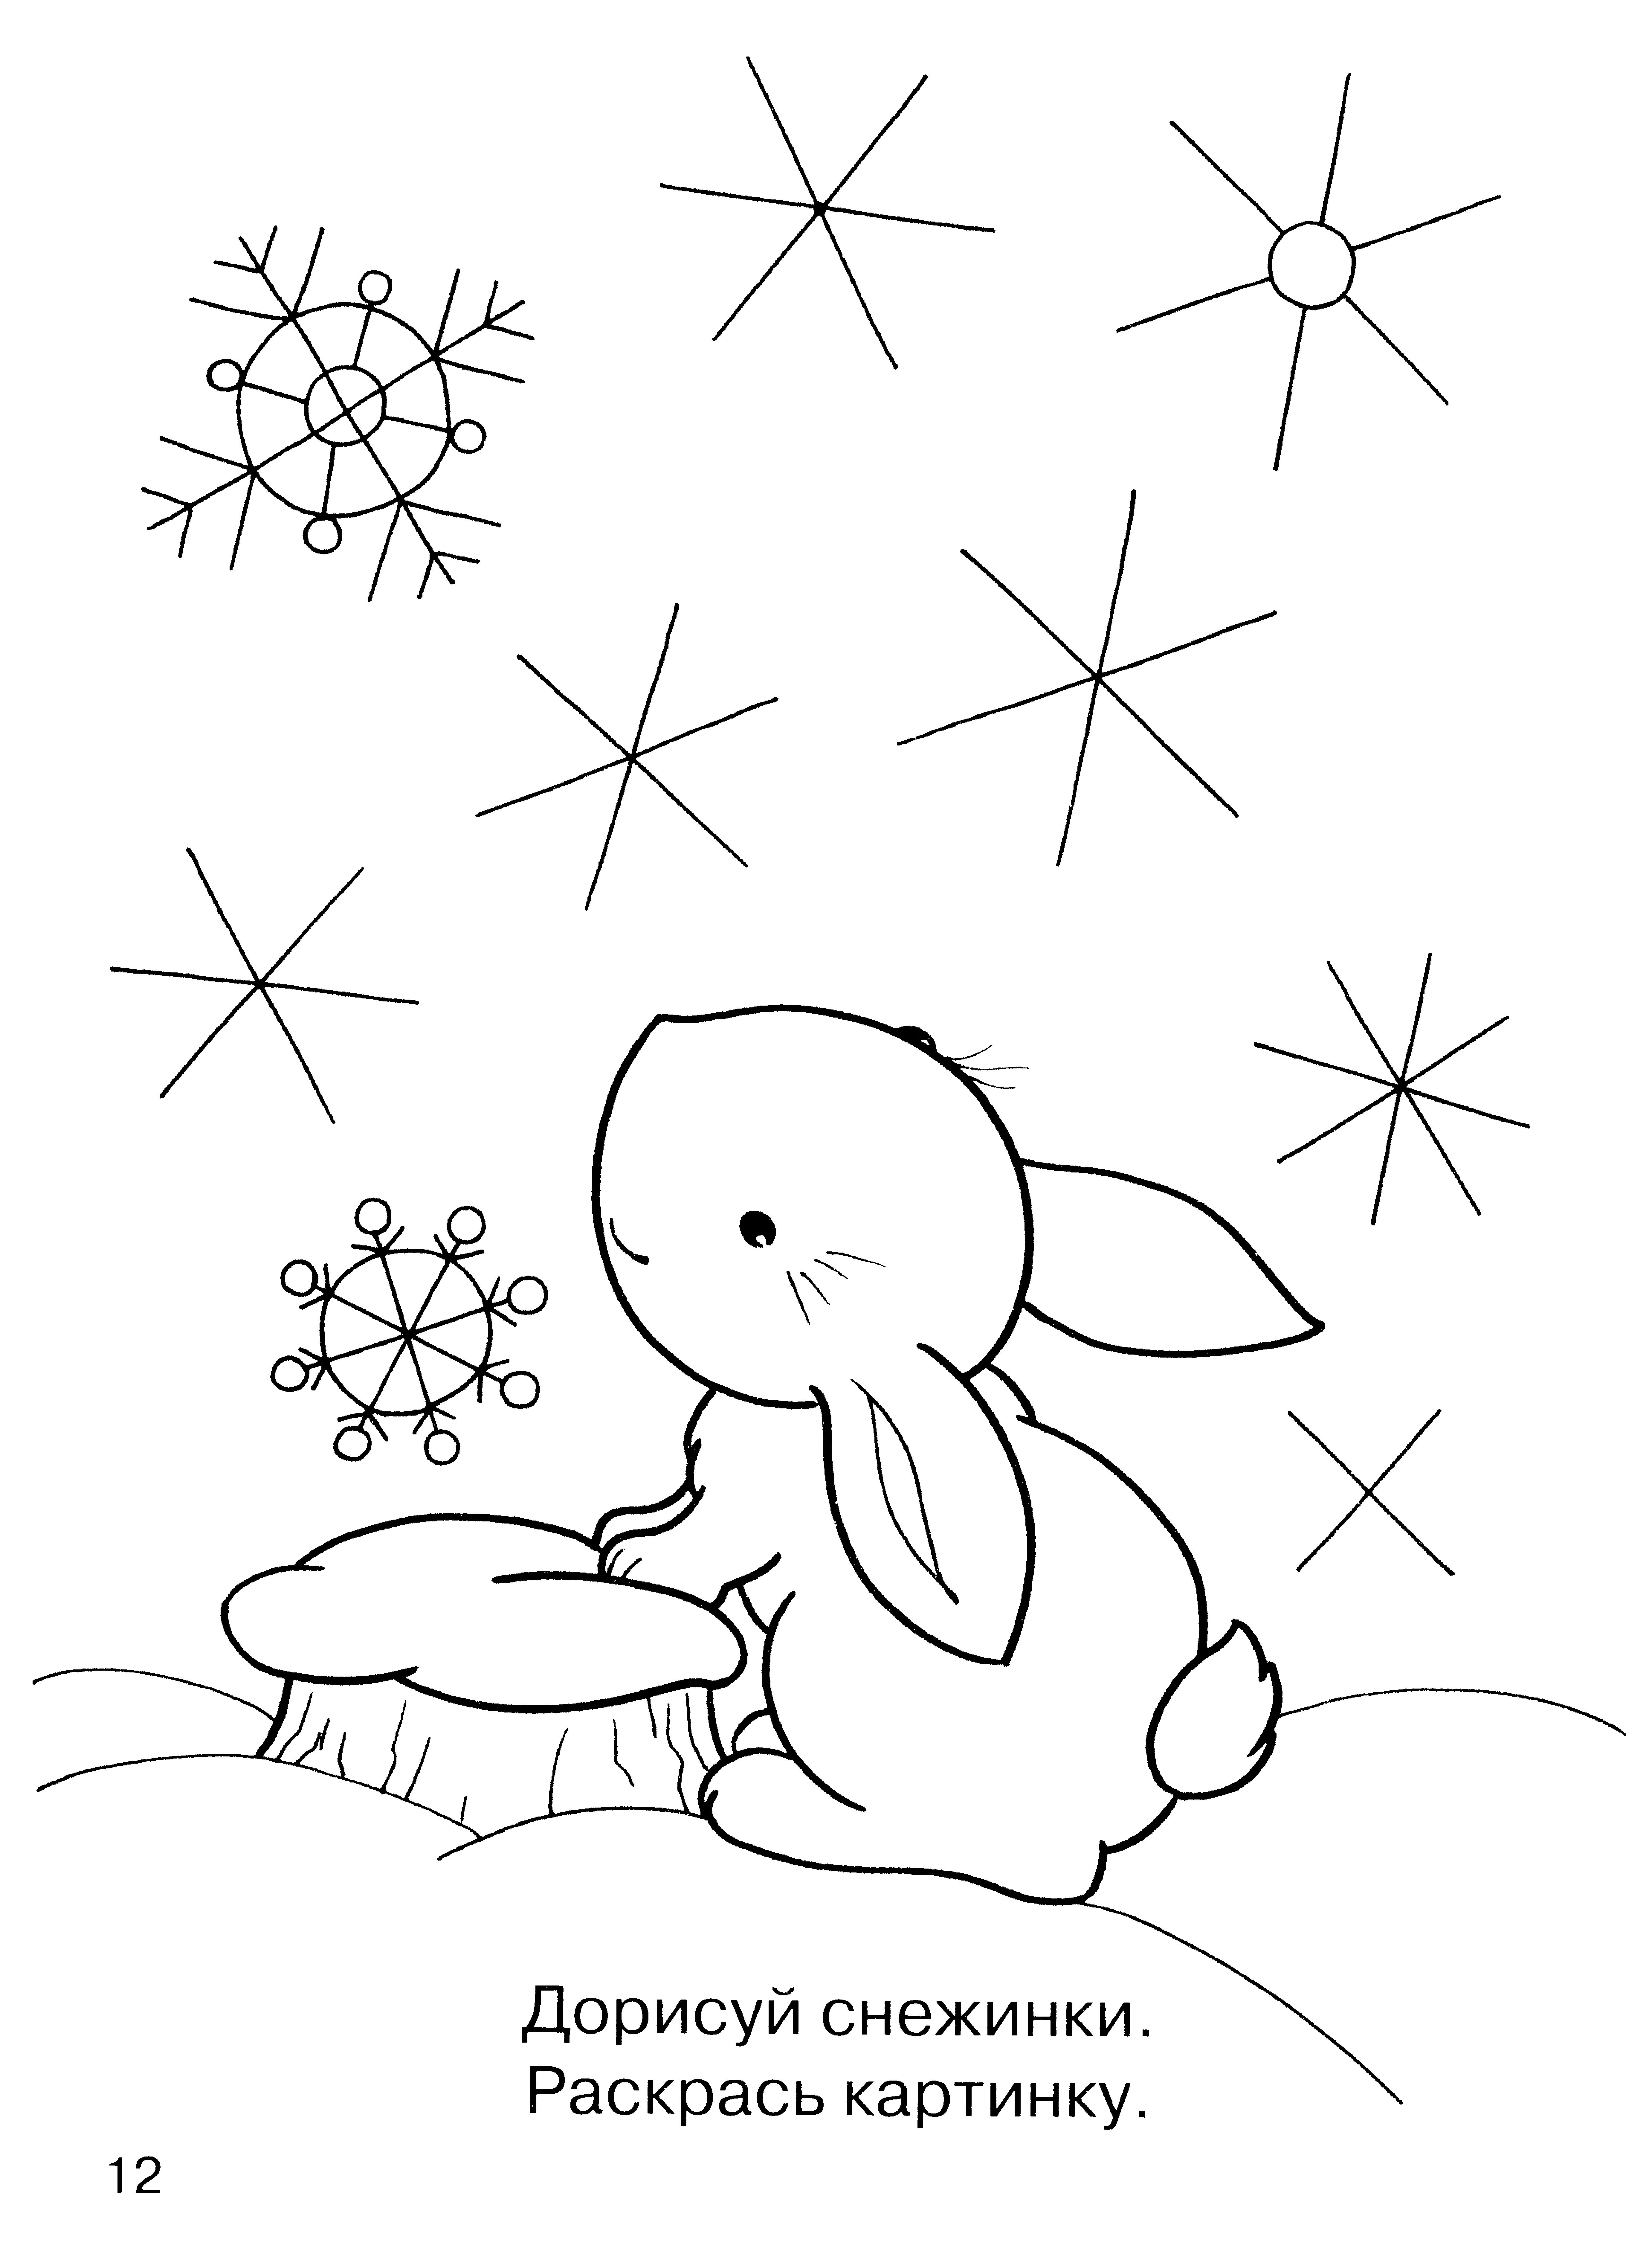 Дорисуй снежинку для дошкольников